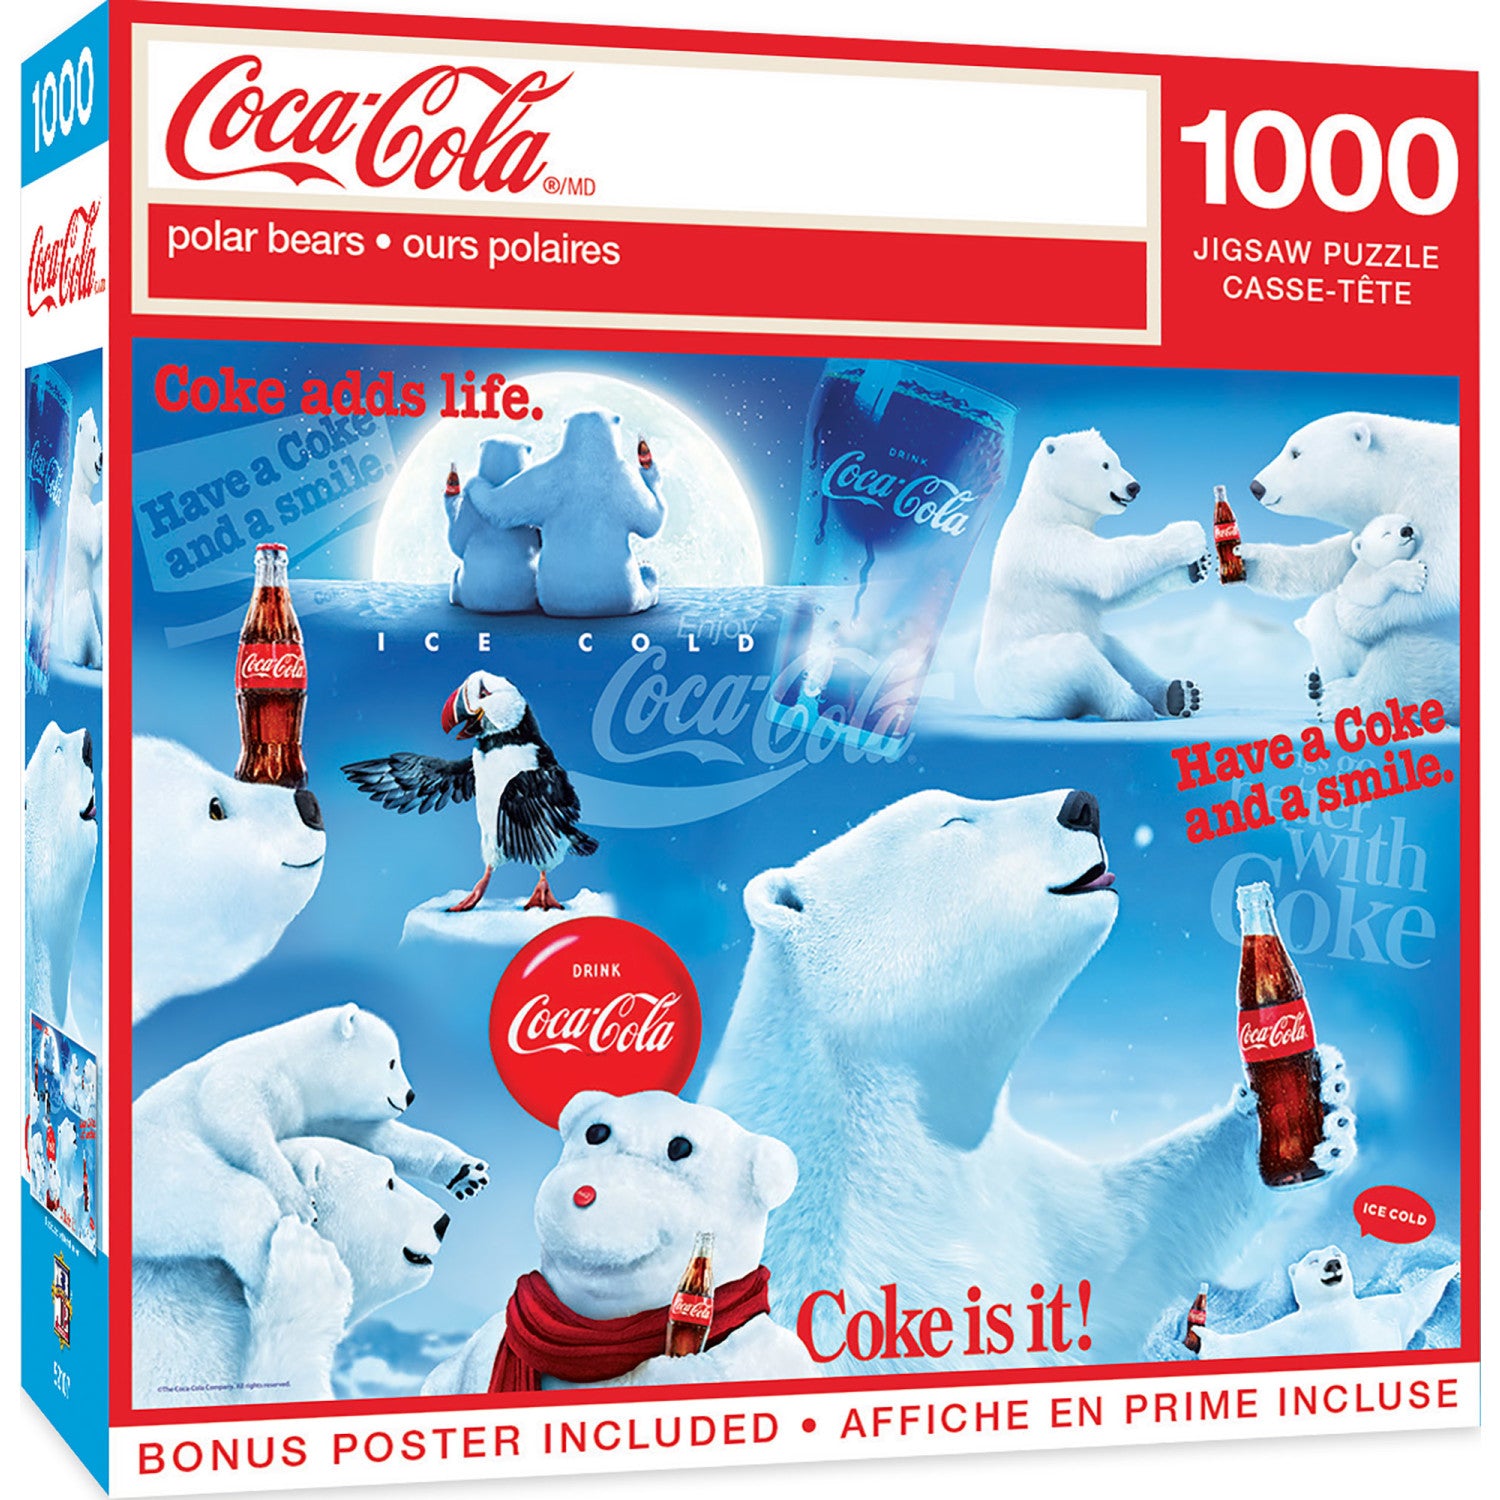 Coca-Cola Photomosiac Big Gulp, 1000 Pieces, MasterPieces